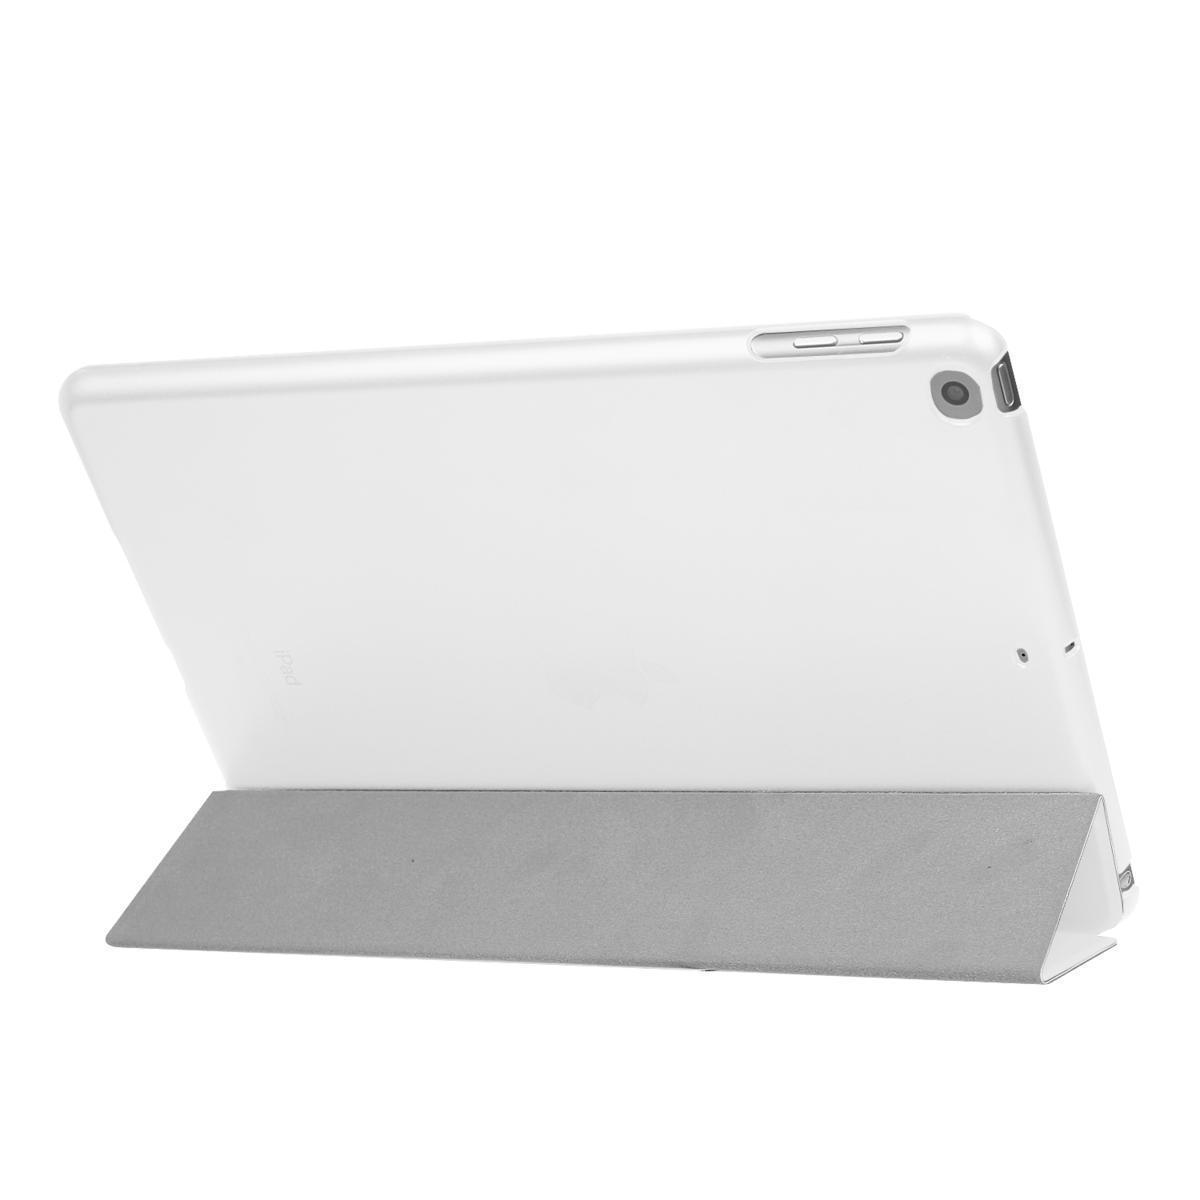 iPad ケース iPad5 / iPad6 / iPad Air1 / iPad Air2 兼用 三つ折スマートカバー PUレザー アイパッド カバー スタンド機能 ホワイト_画像2